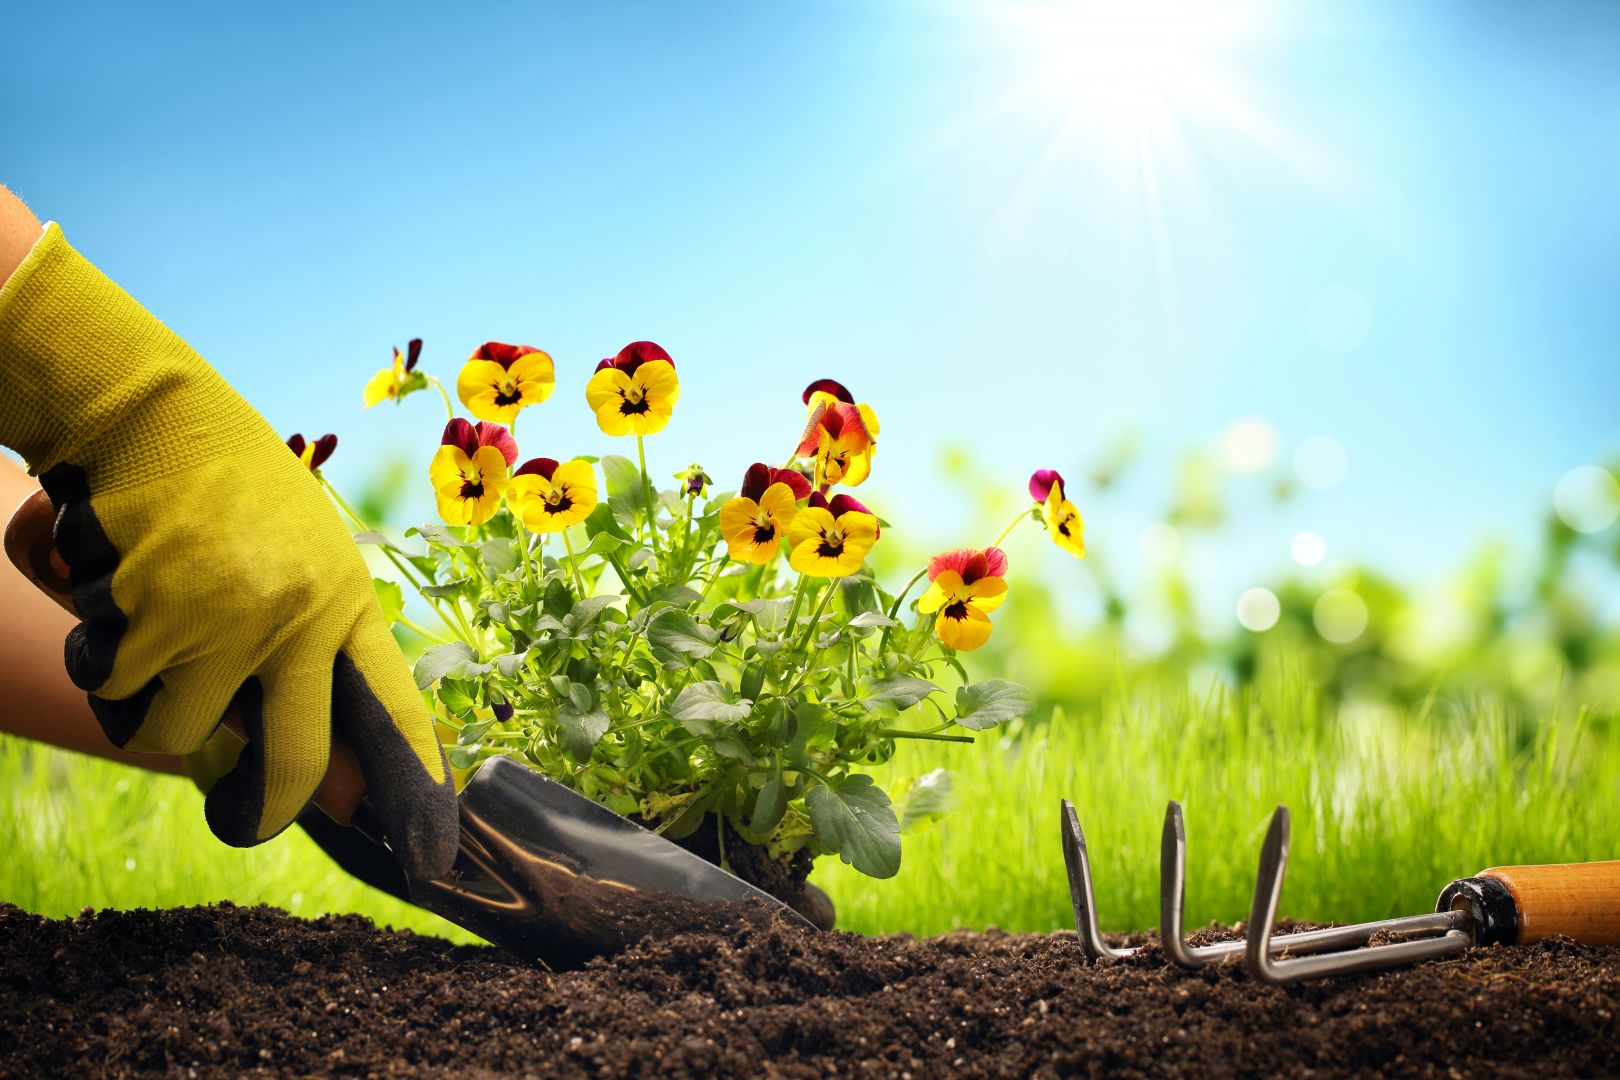 Poptávka na údržba okrasné zahrady (Zahradníci) - Znojmo